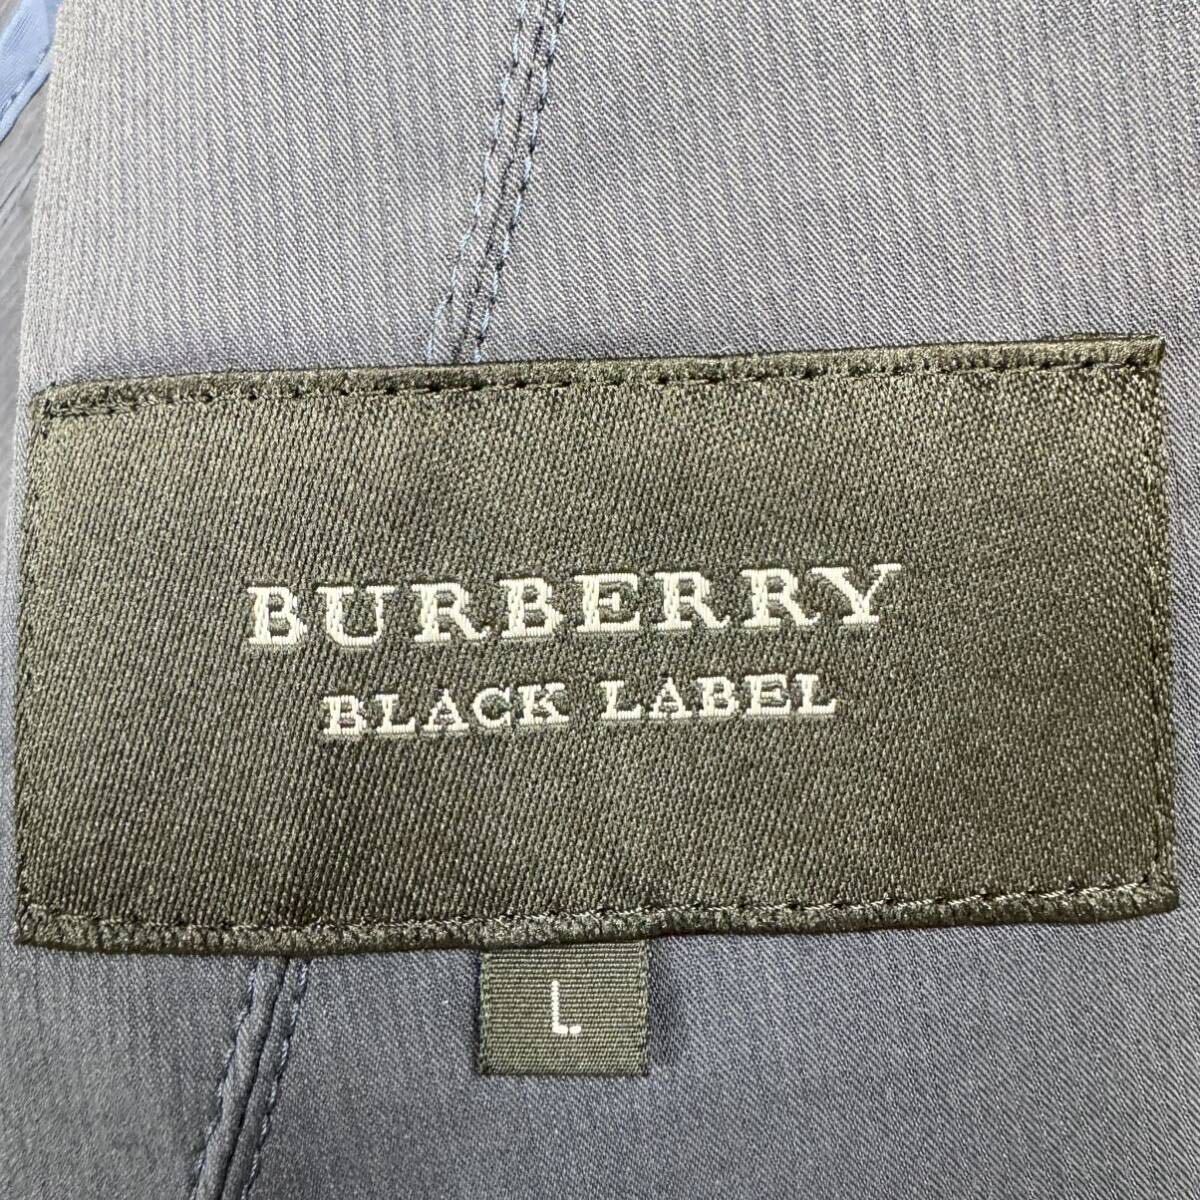 希少Lサイズ Burberry Black Label バーバリーブラックレーベル ストライプ テーラードジャケット ノバチェック ビジネス 背抜き 2B の画像6